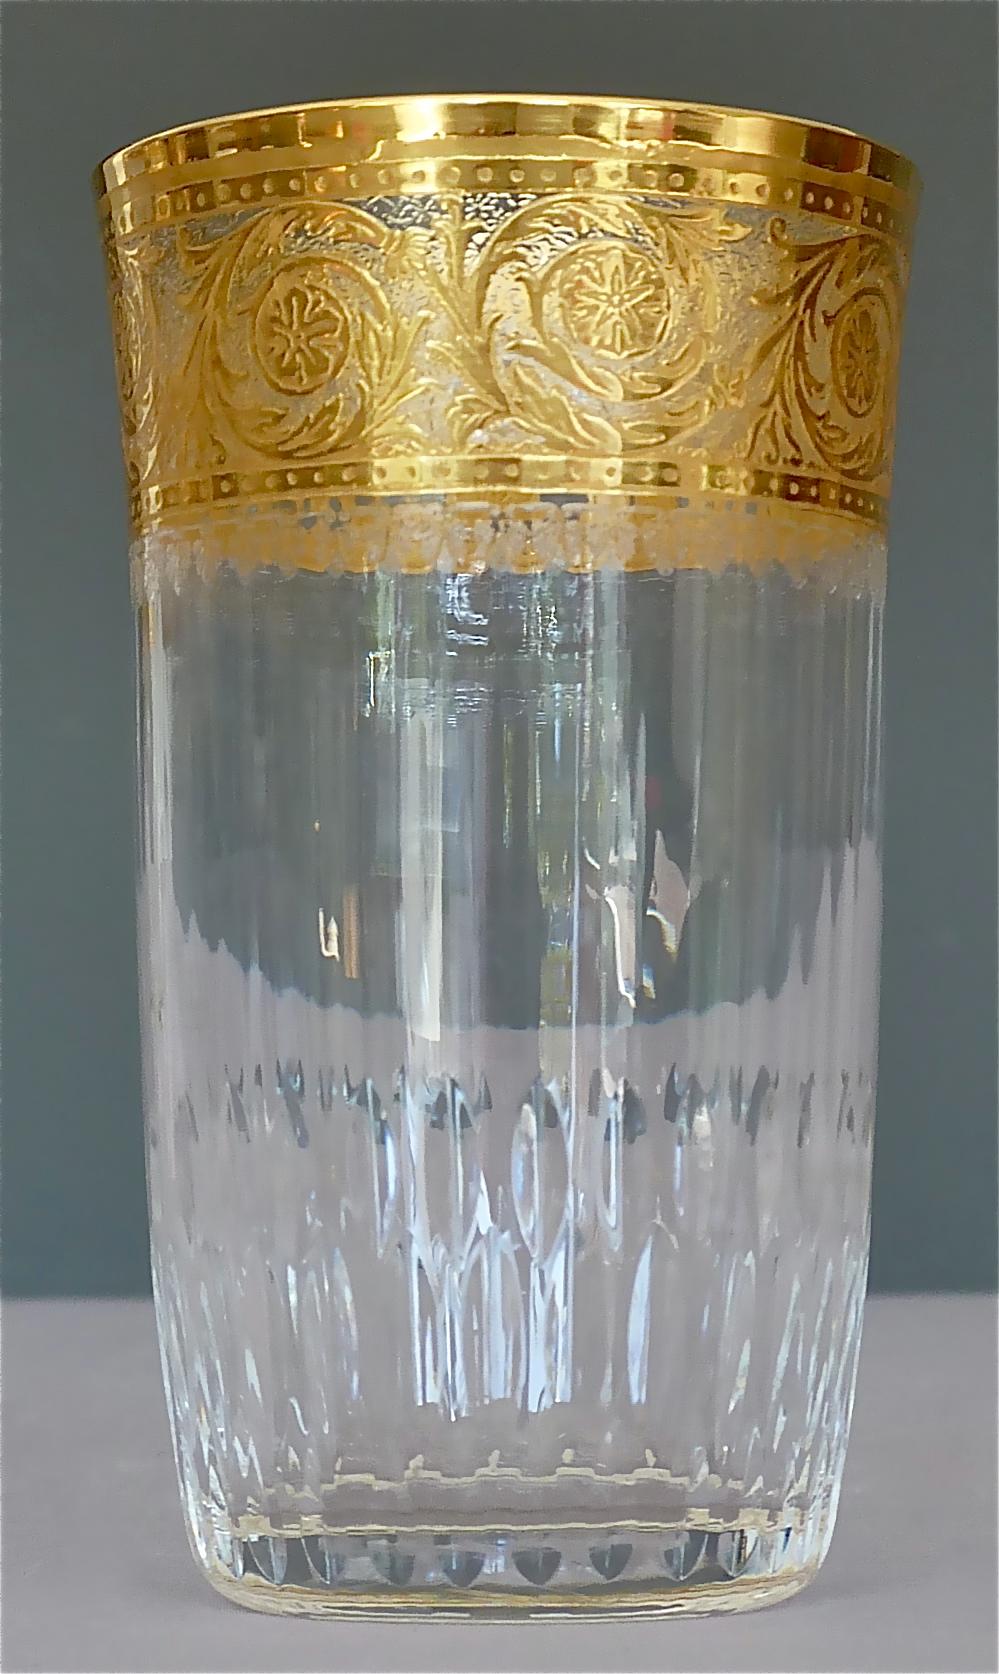 24 Saint Louis-Wassergläser aus vergoldetem Kristall, Champagner, Rot, Weiß und Weiß, Distel, 1950er Jahre (Hollywood Regency)